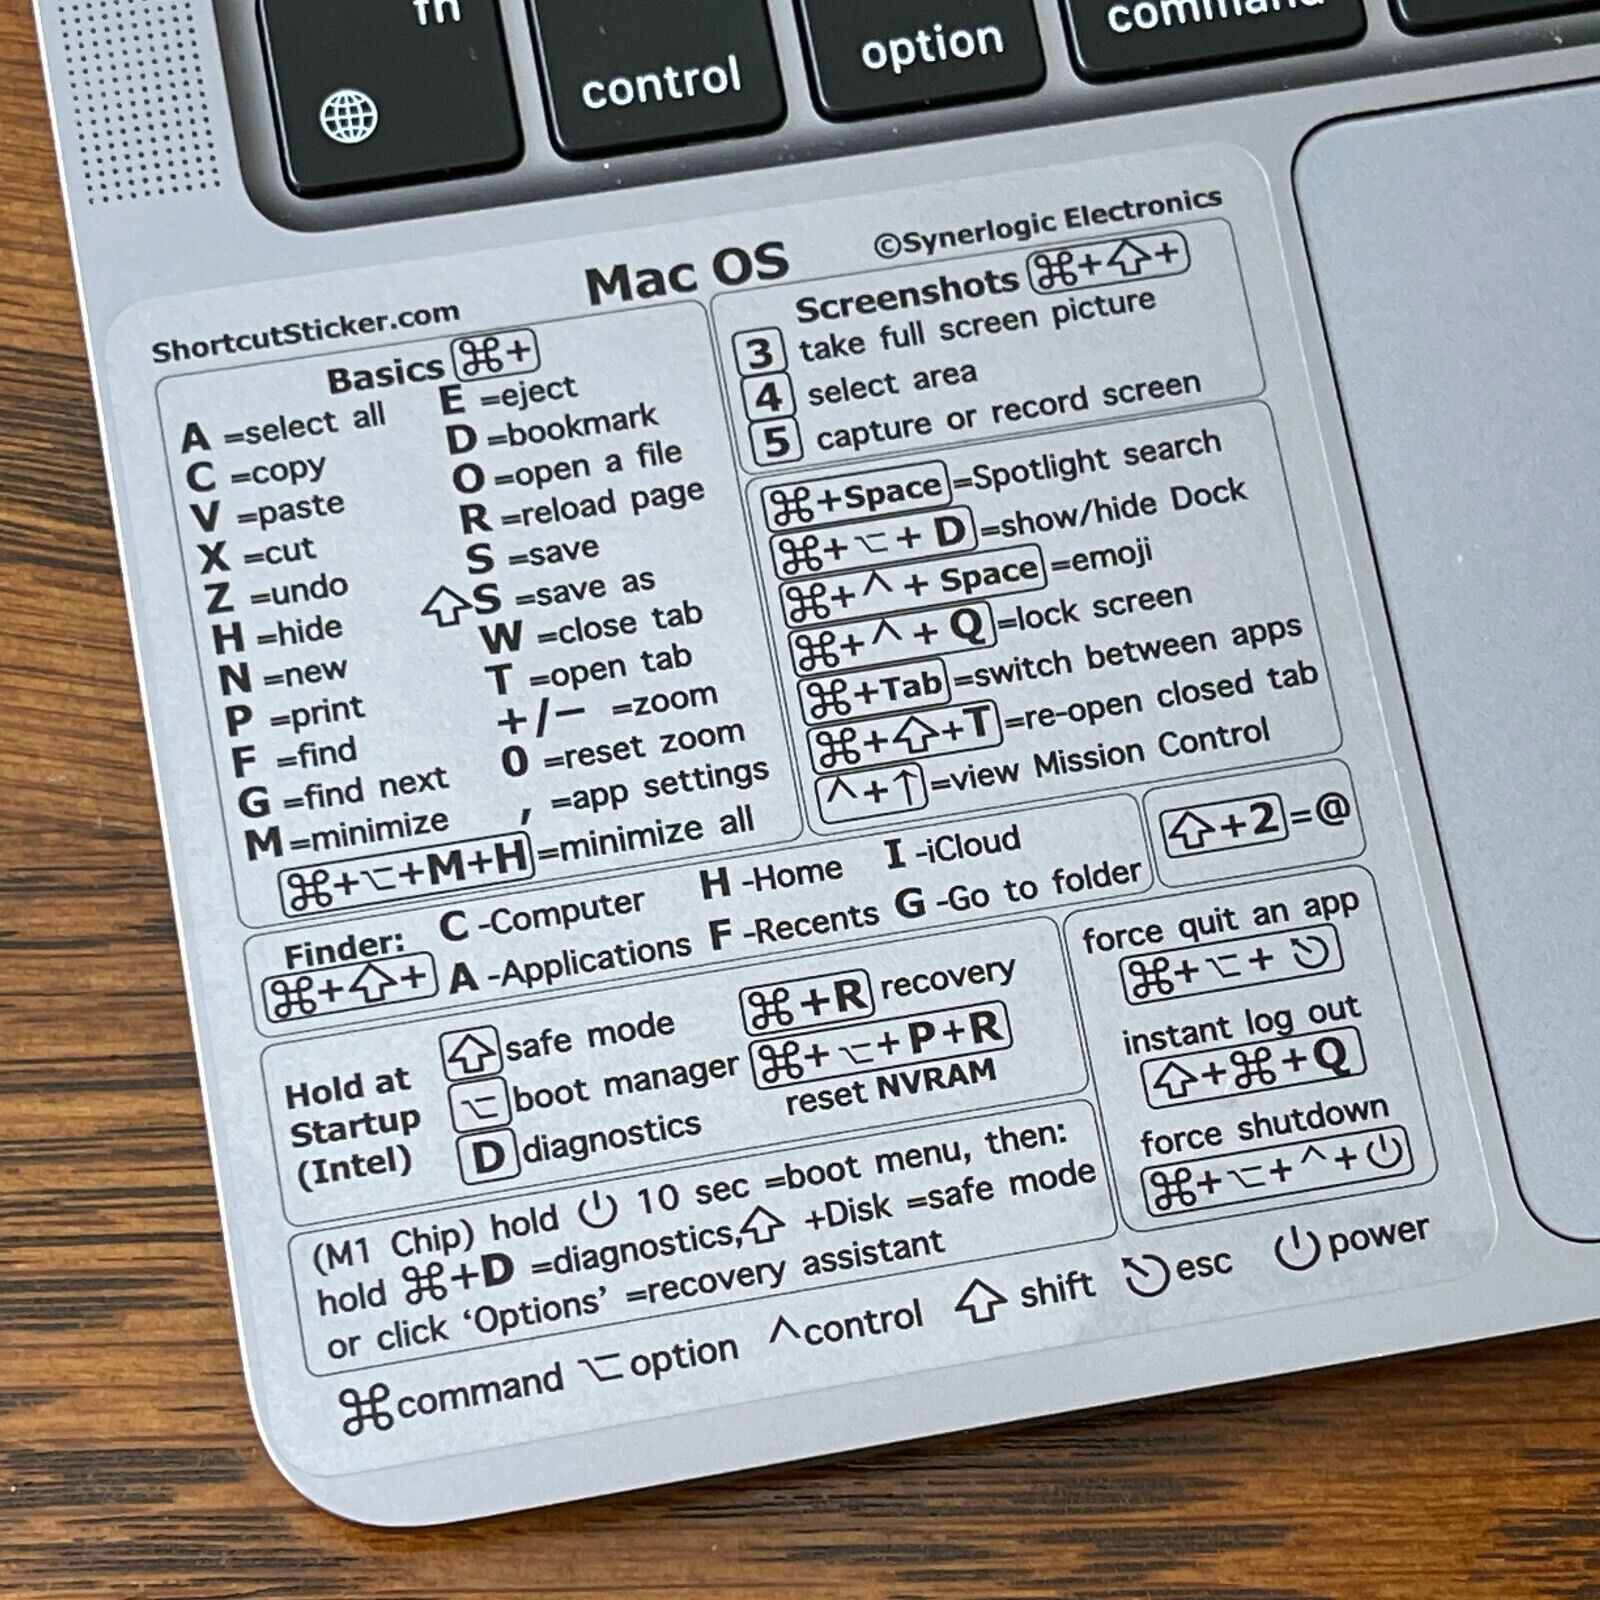 Synerlogic Mac OS (CLEAR VINYL) Keyboard Shortcut sticker for M or Intel chip